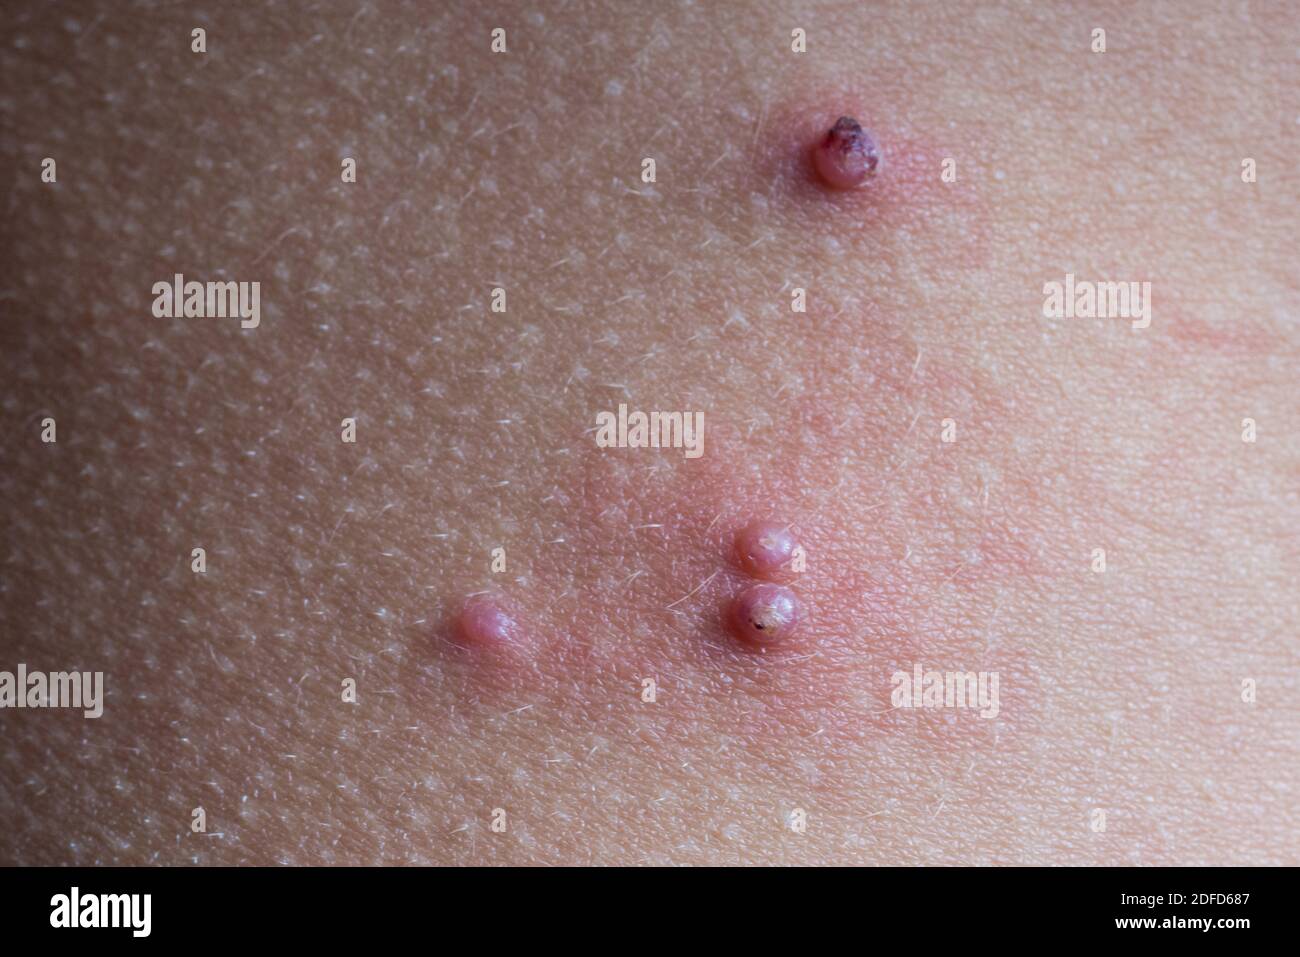 Moluskum contagiosum sur la peau d'un enfant. Banque D'Images